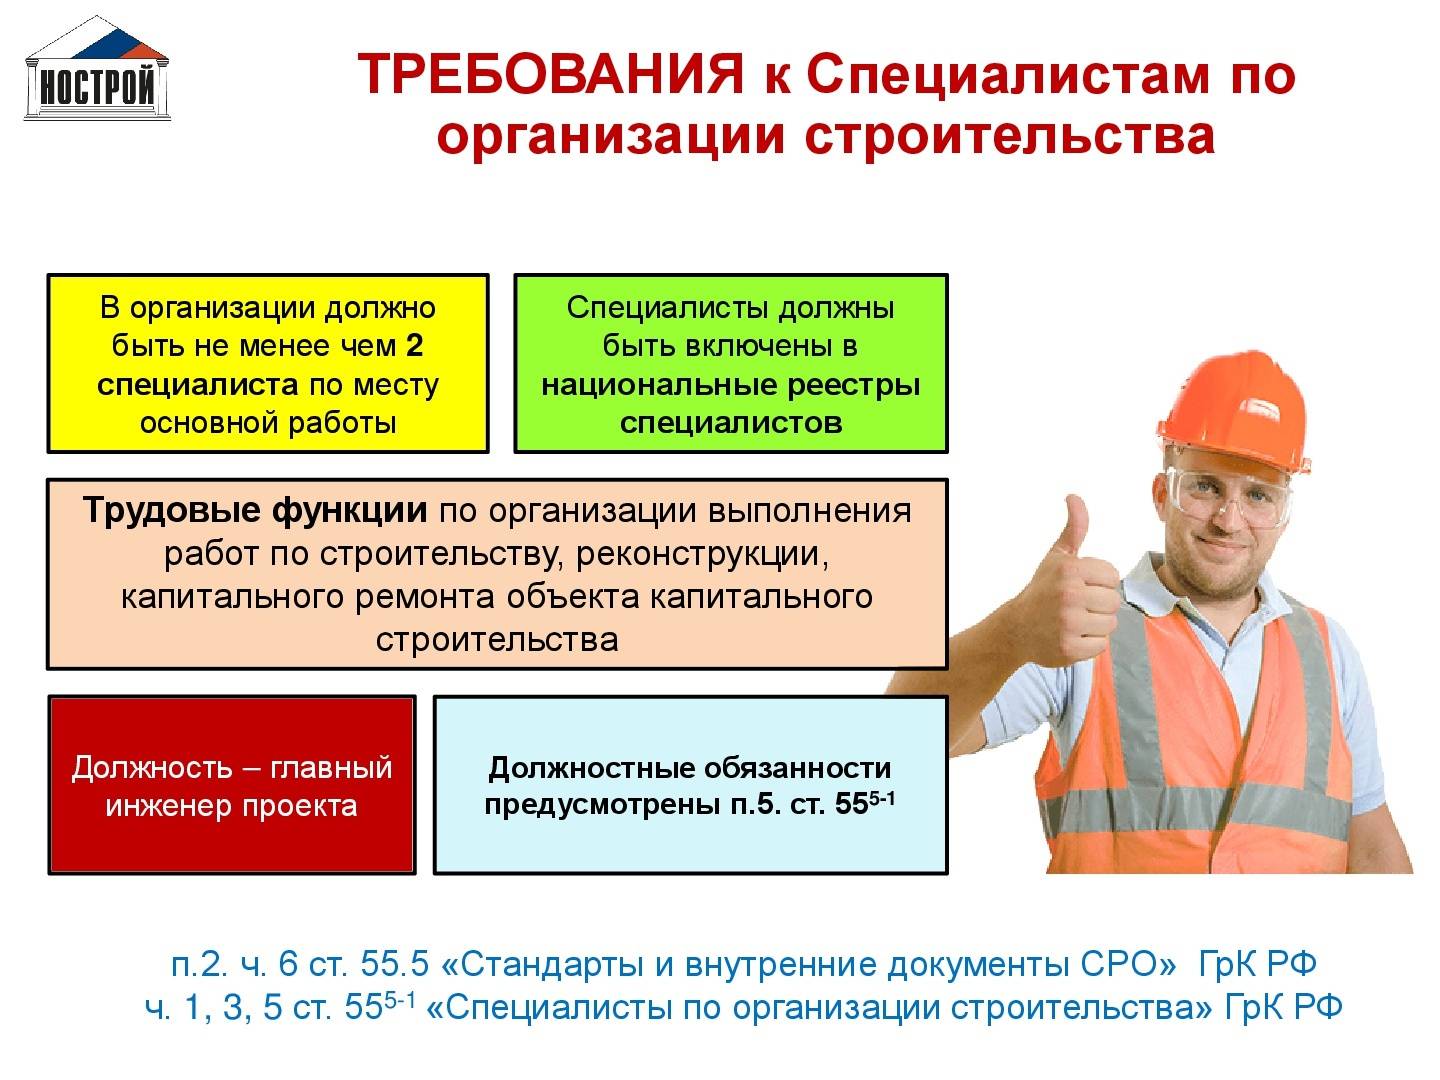 Работа в россии, строитель каркасных домов, 86 свежих вакансий, февраль 2023